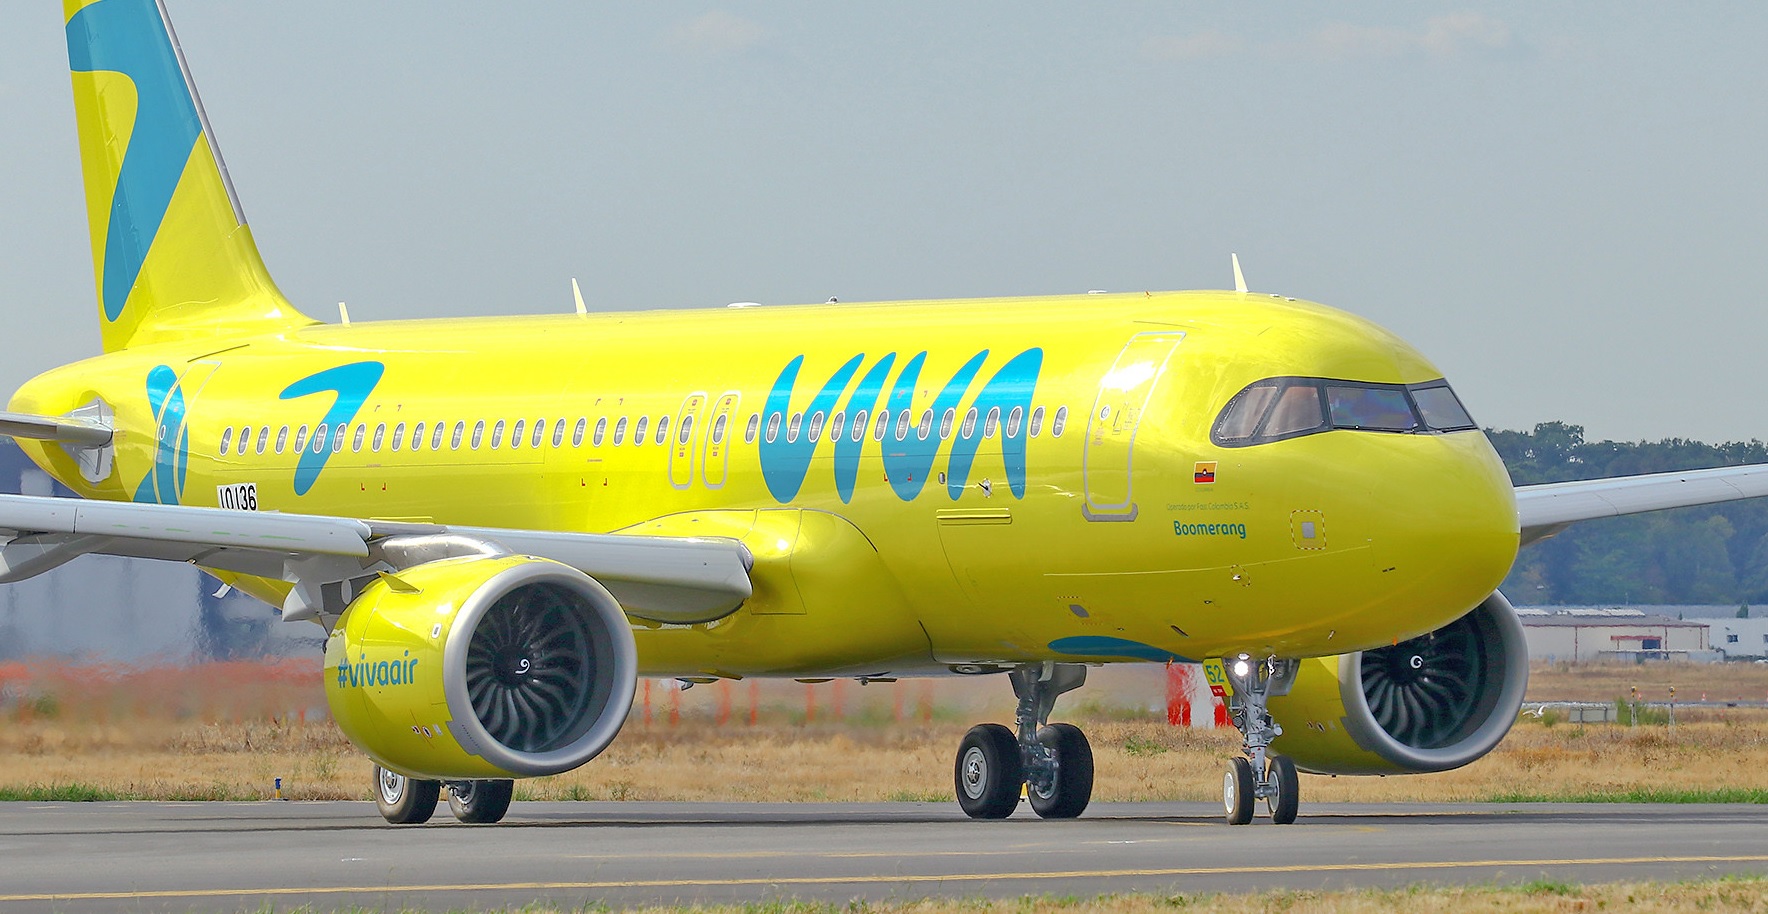 Unión de aerolíneas entre Avianca y Viva Air dinamizarán el mercado de las low cost